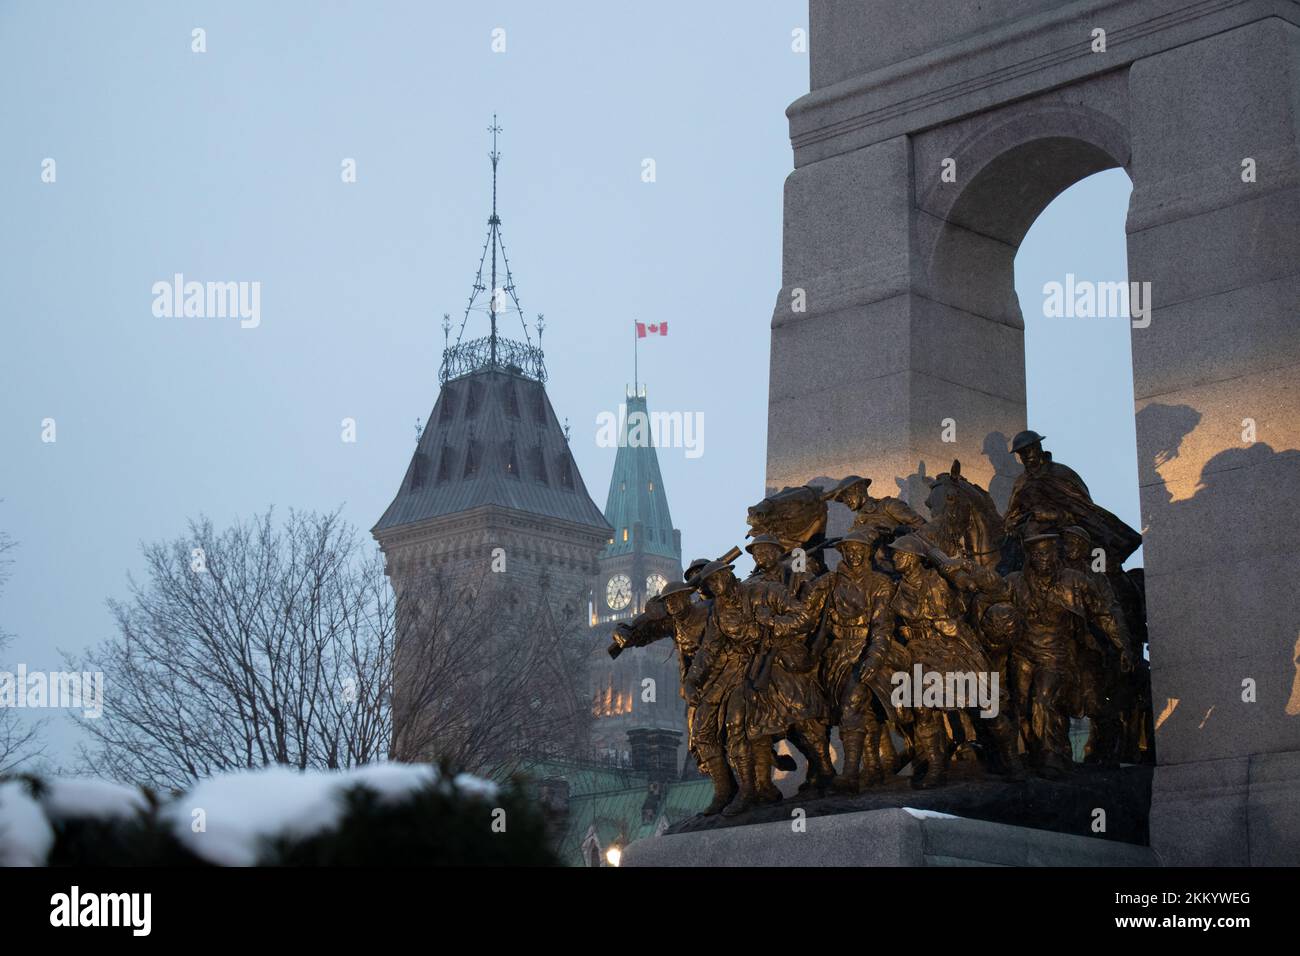 En una tarde nevada, se ve iluminado el Monumento Nacional a la Guerra en Ottawa, la capital de Canadá. La Torre de la Paz del Parlamento en el fondo lejano. Foto de stock